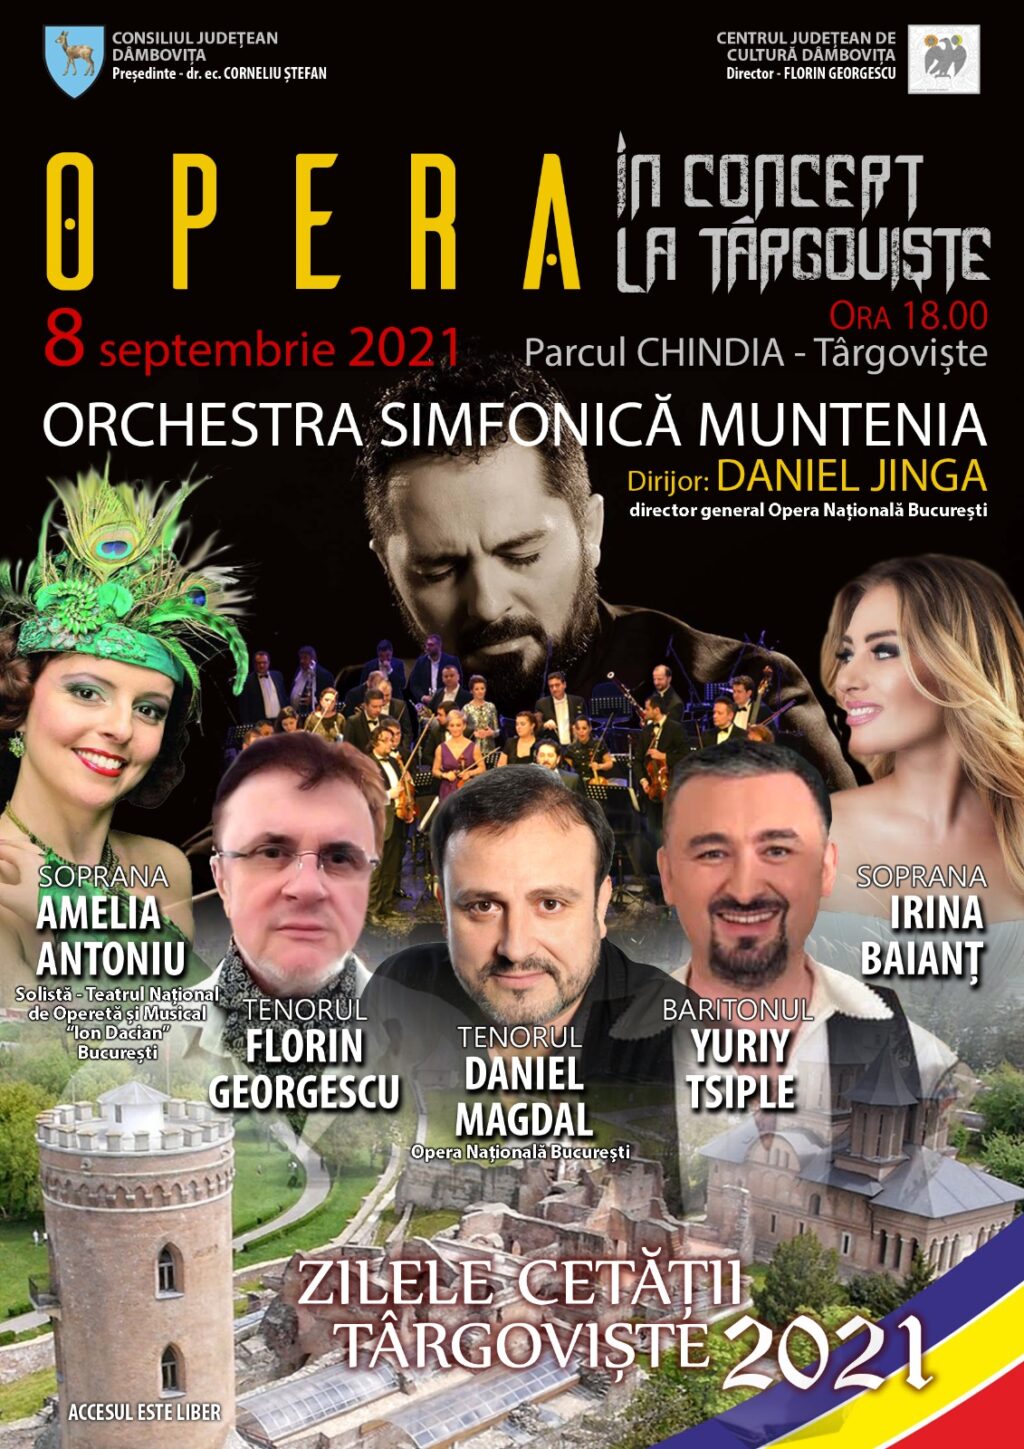 De Zilele Cetății, OPERA în concert la Târgoviște și spectacol folcloric extraordinar